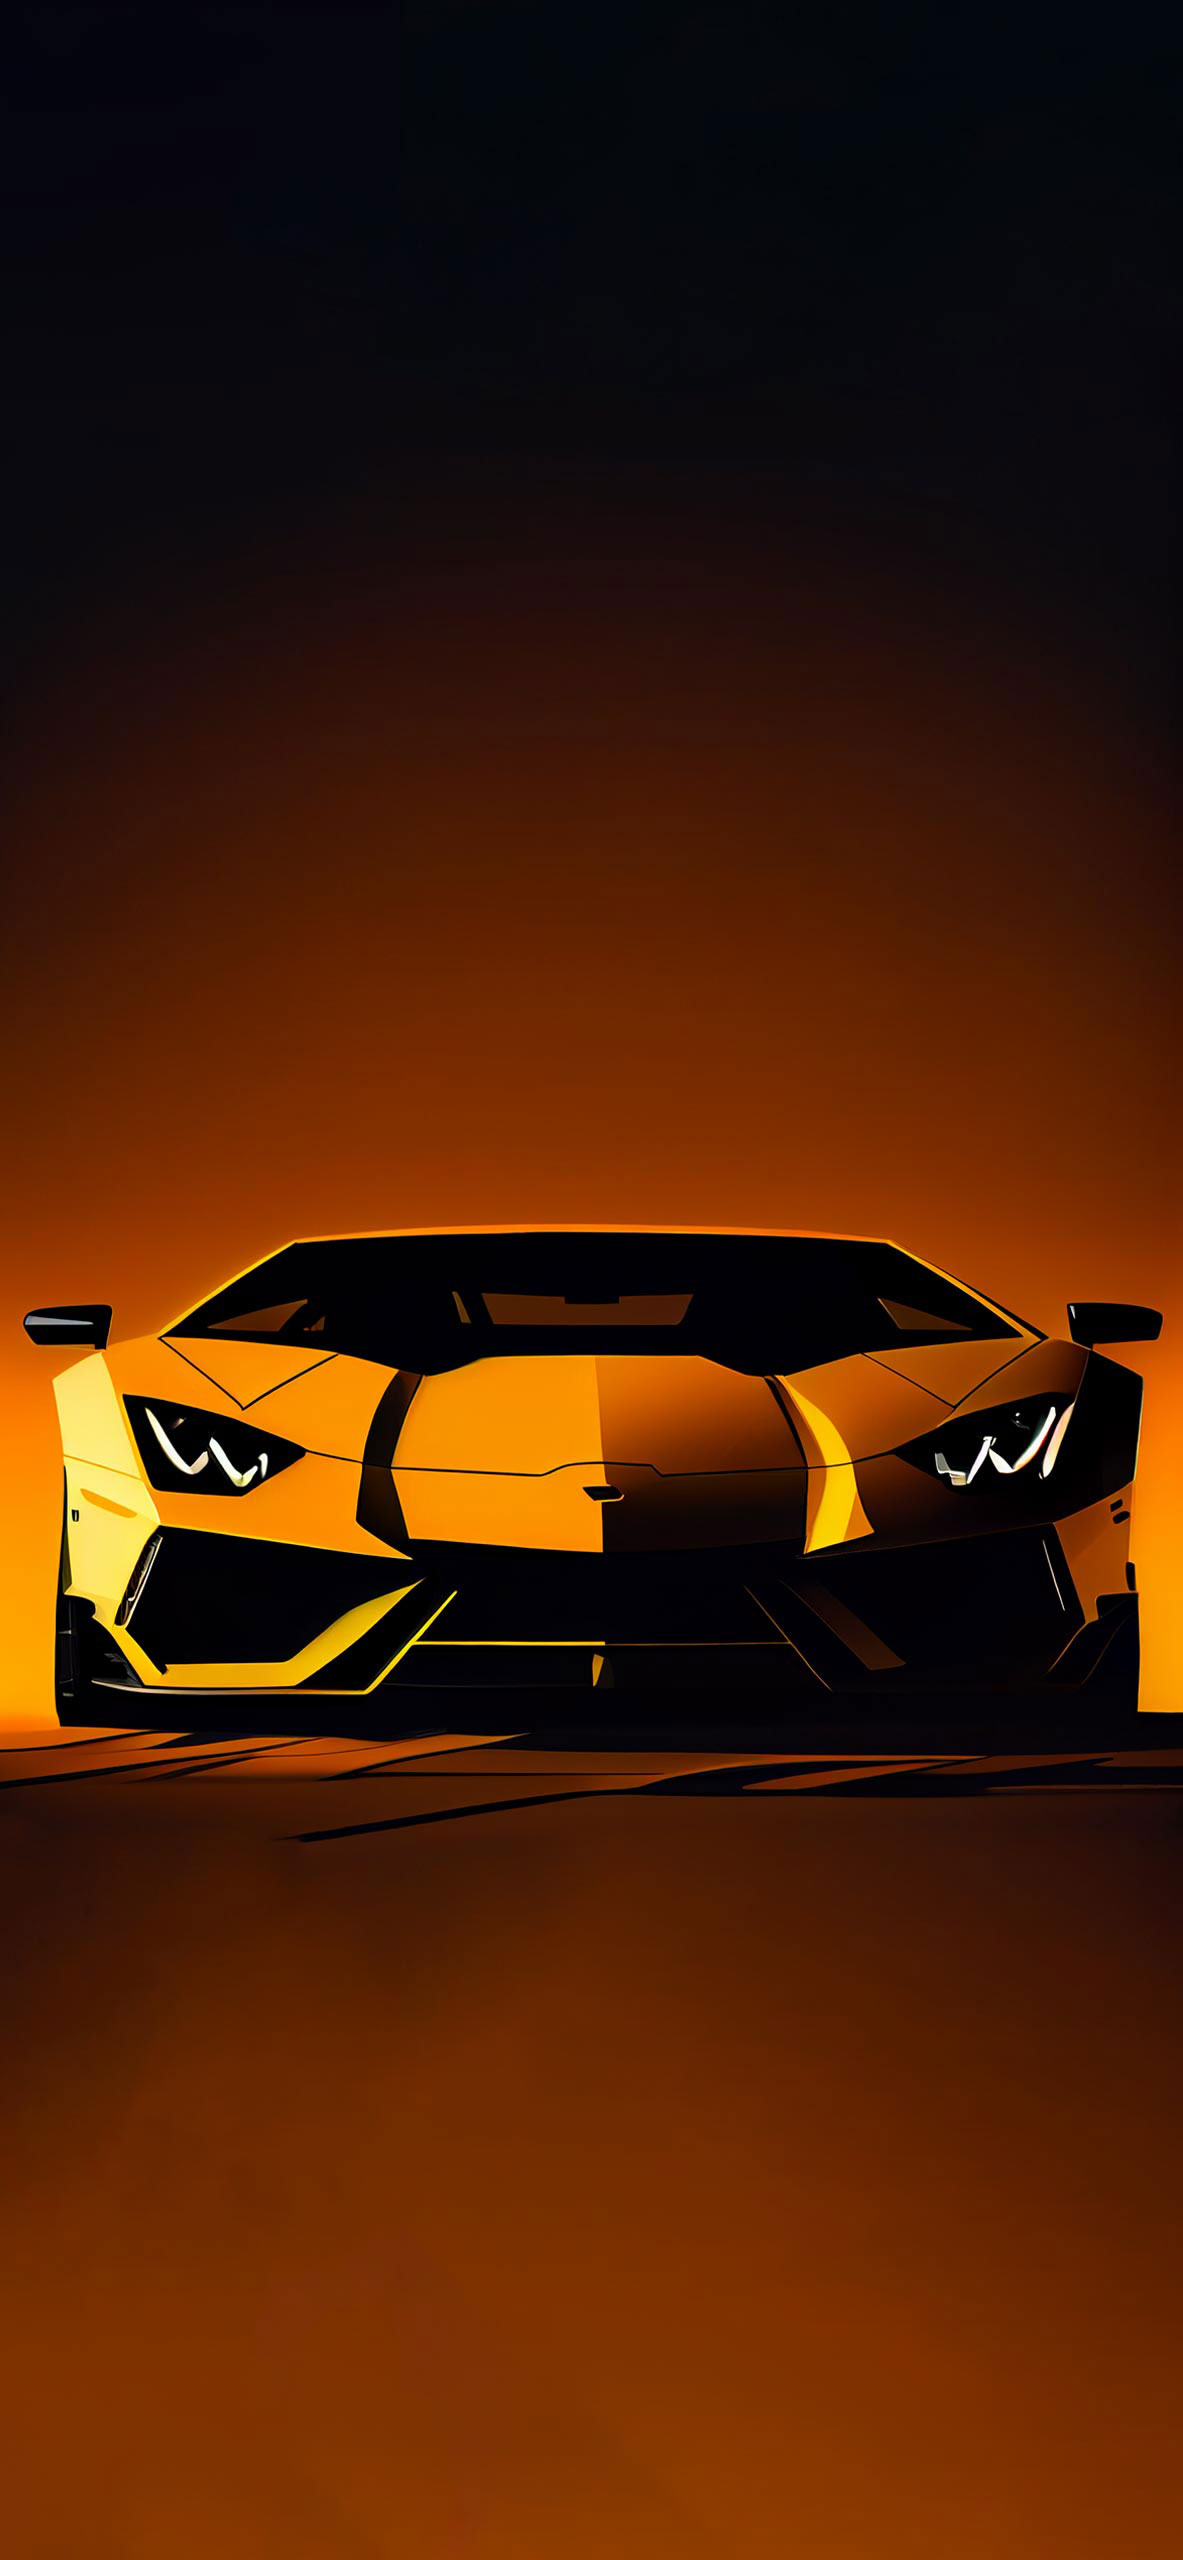 Lamborghini Aventador Yellow Wallpaper Car iPhone